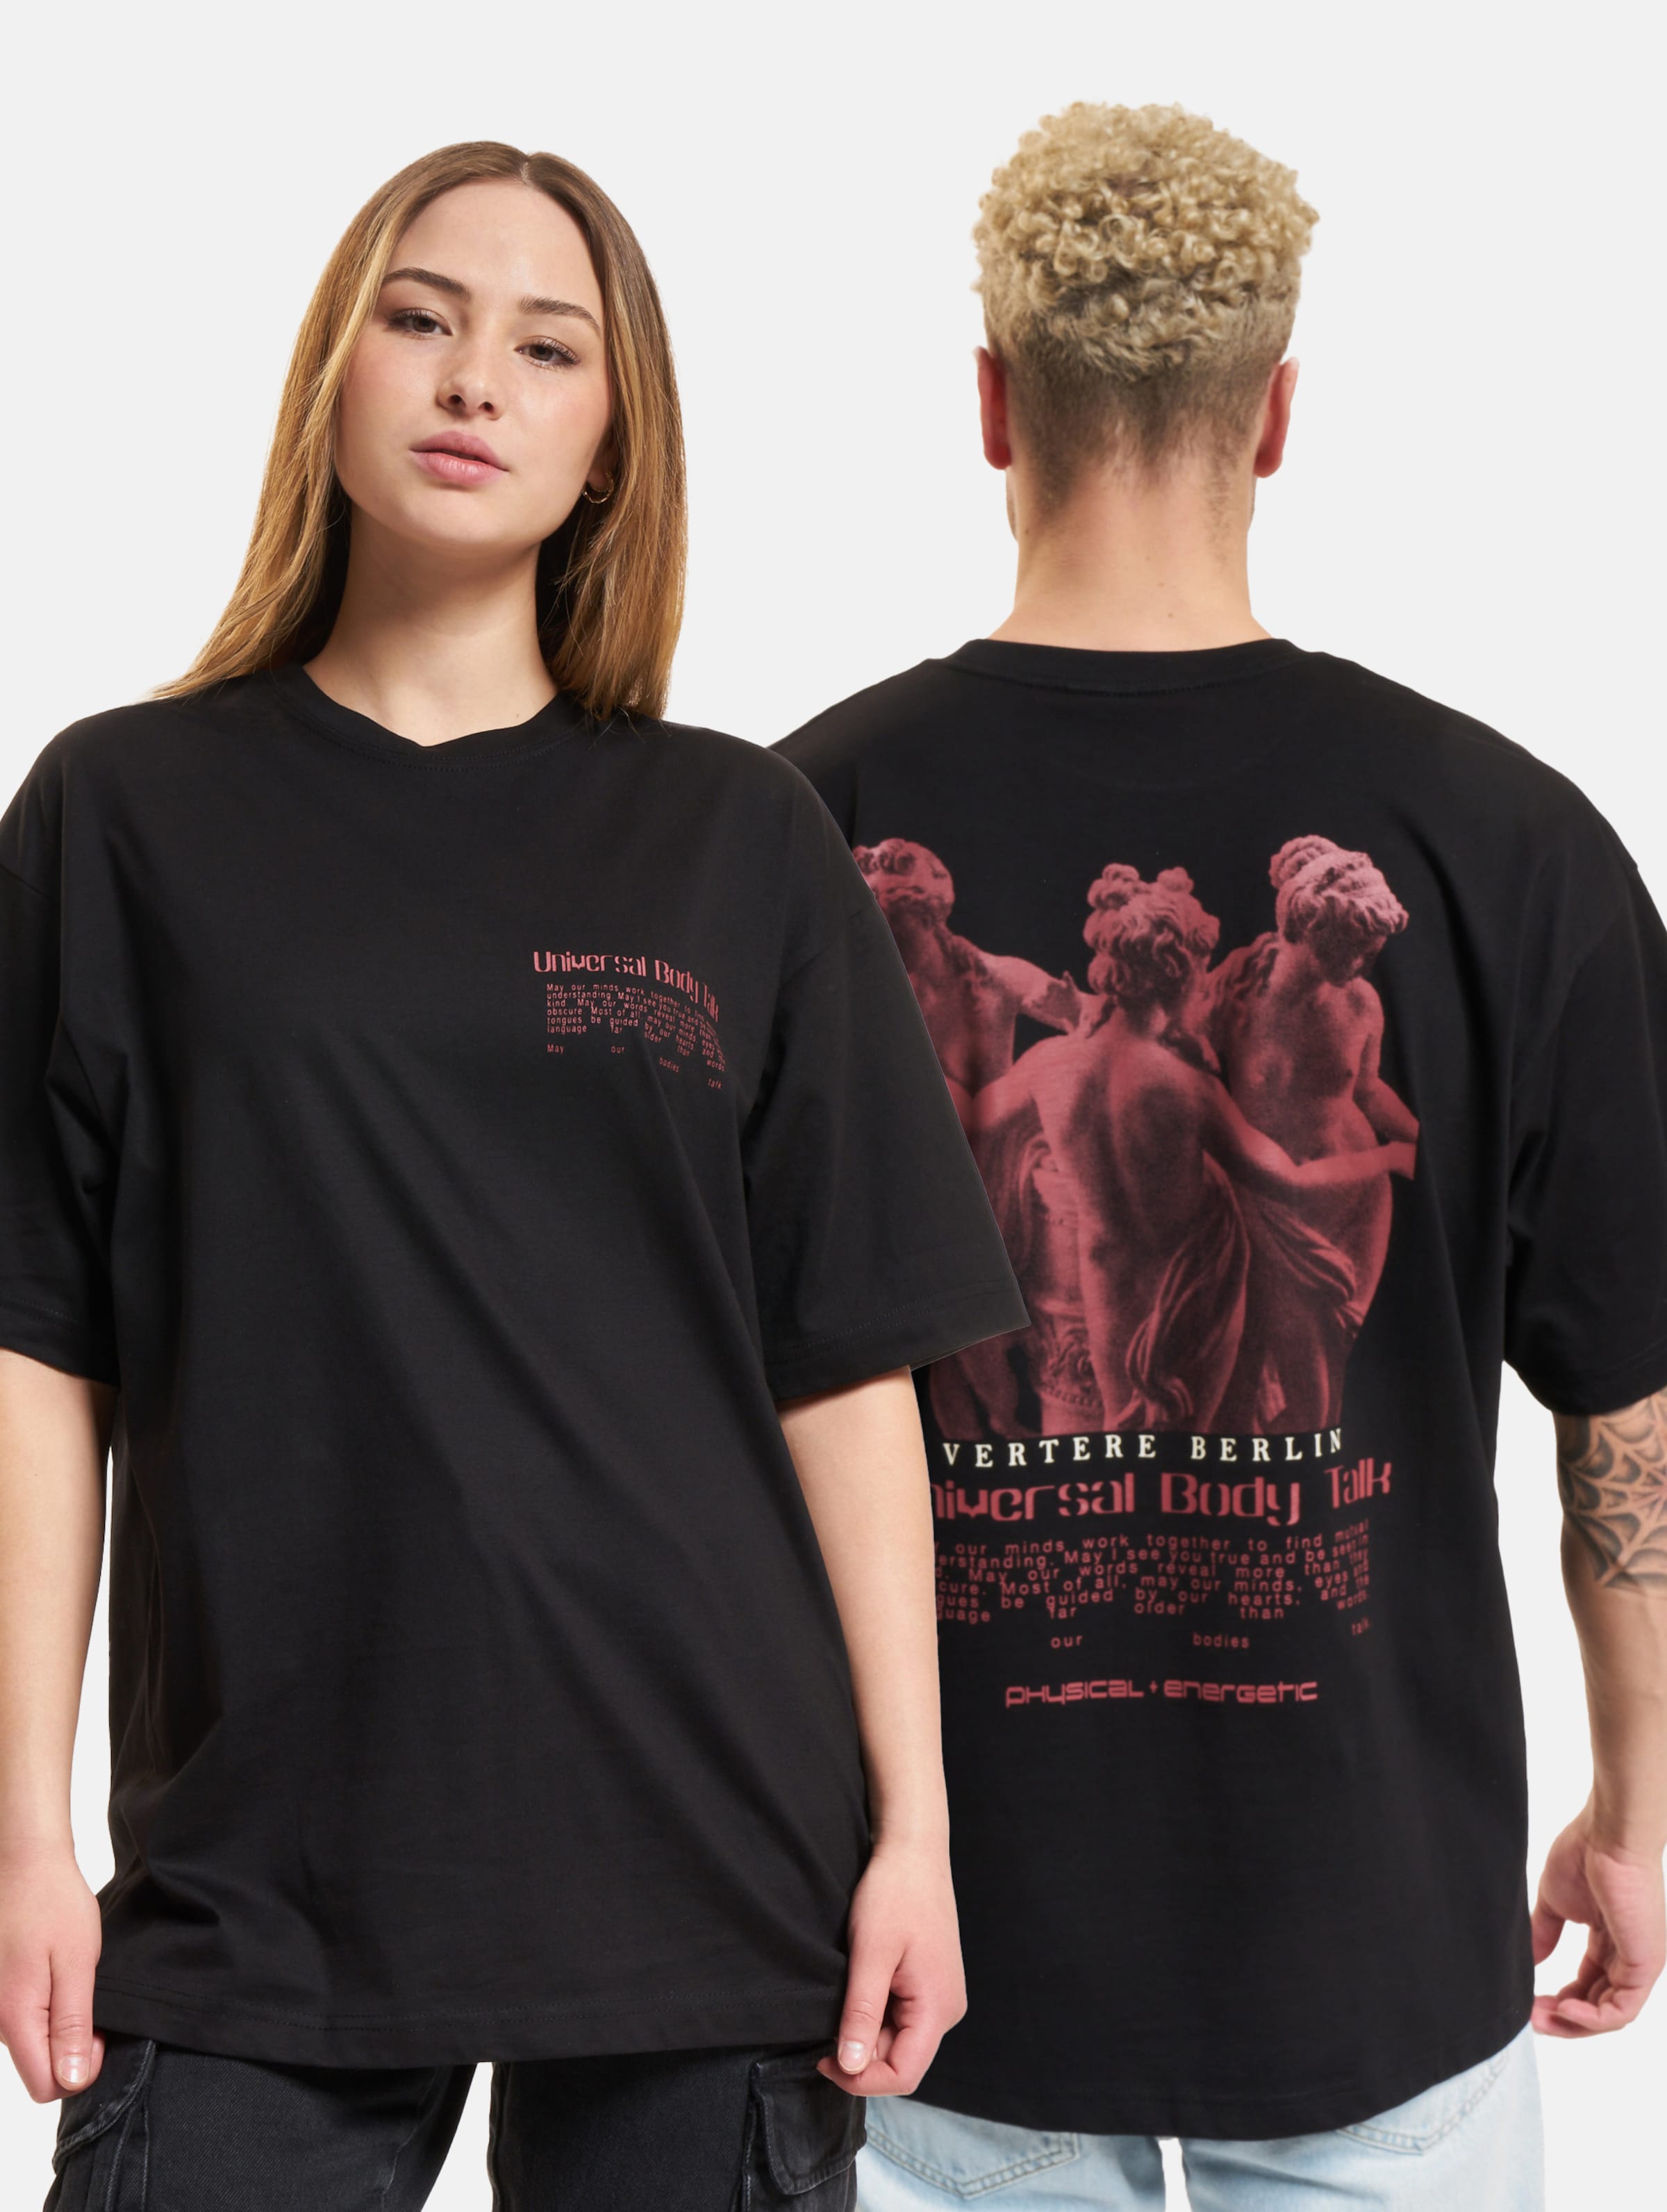 Vertere Berlin Universal Body Talk T-Shirt Frauen,Männer,Unisex op kleur zwart, Maat XL